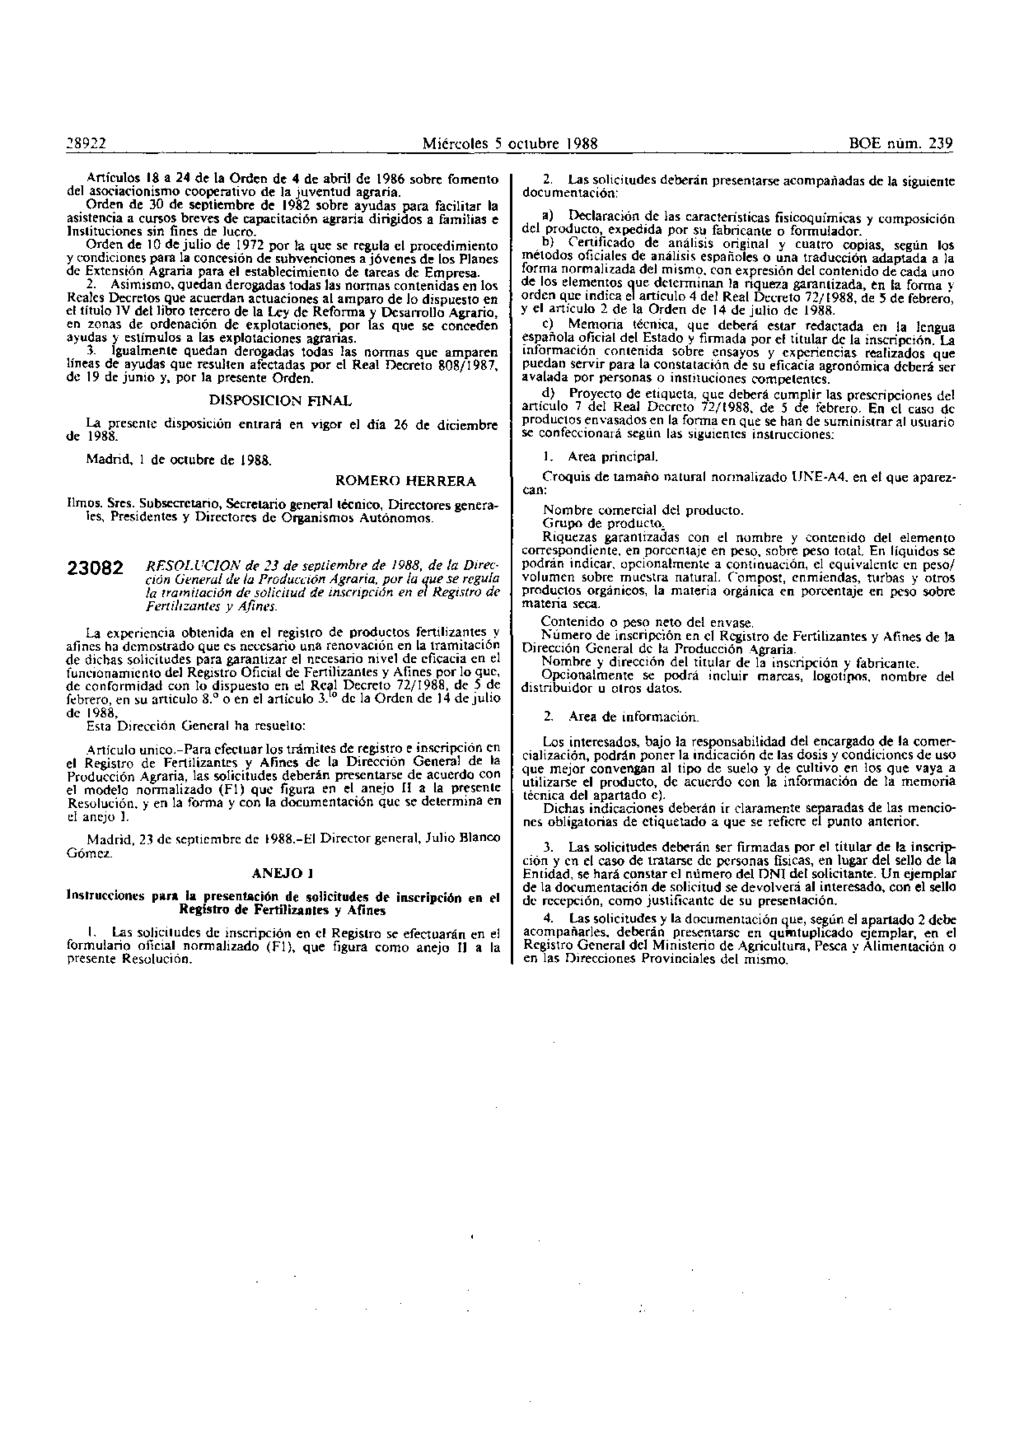 28922 Miércoles 5 oclubre 1988 BOE núm. 239 Artículos 18 a 24 de la Orden de 4 de abril de 1986 sobre fomento del asociacionismo cooperativo de la juventud agraria.